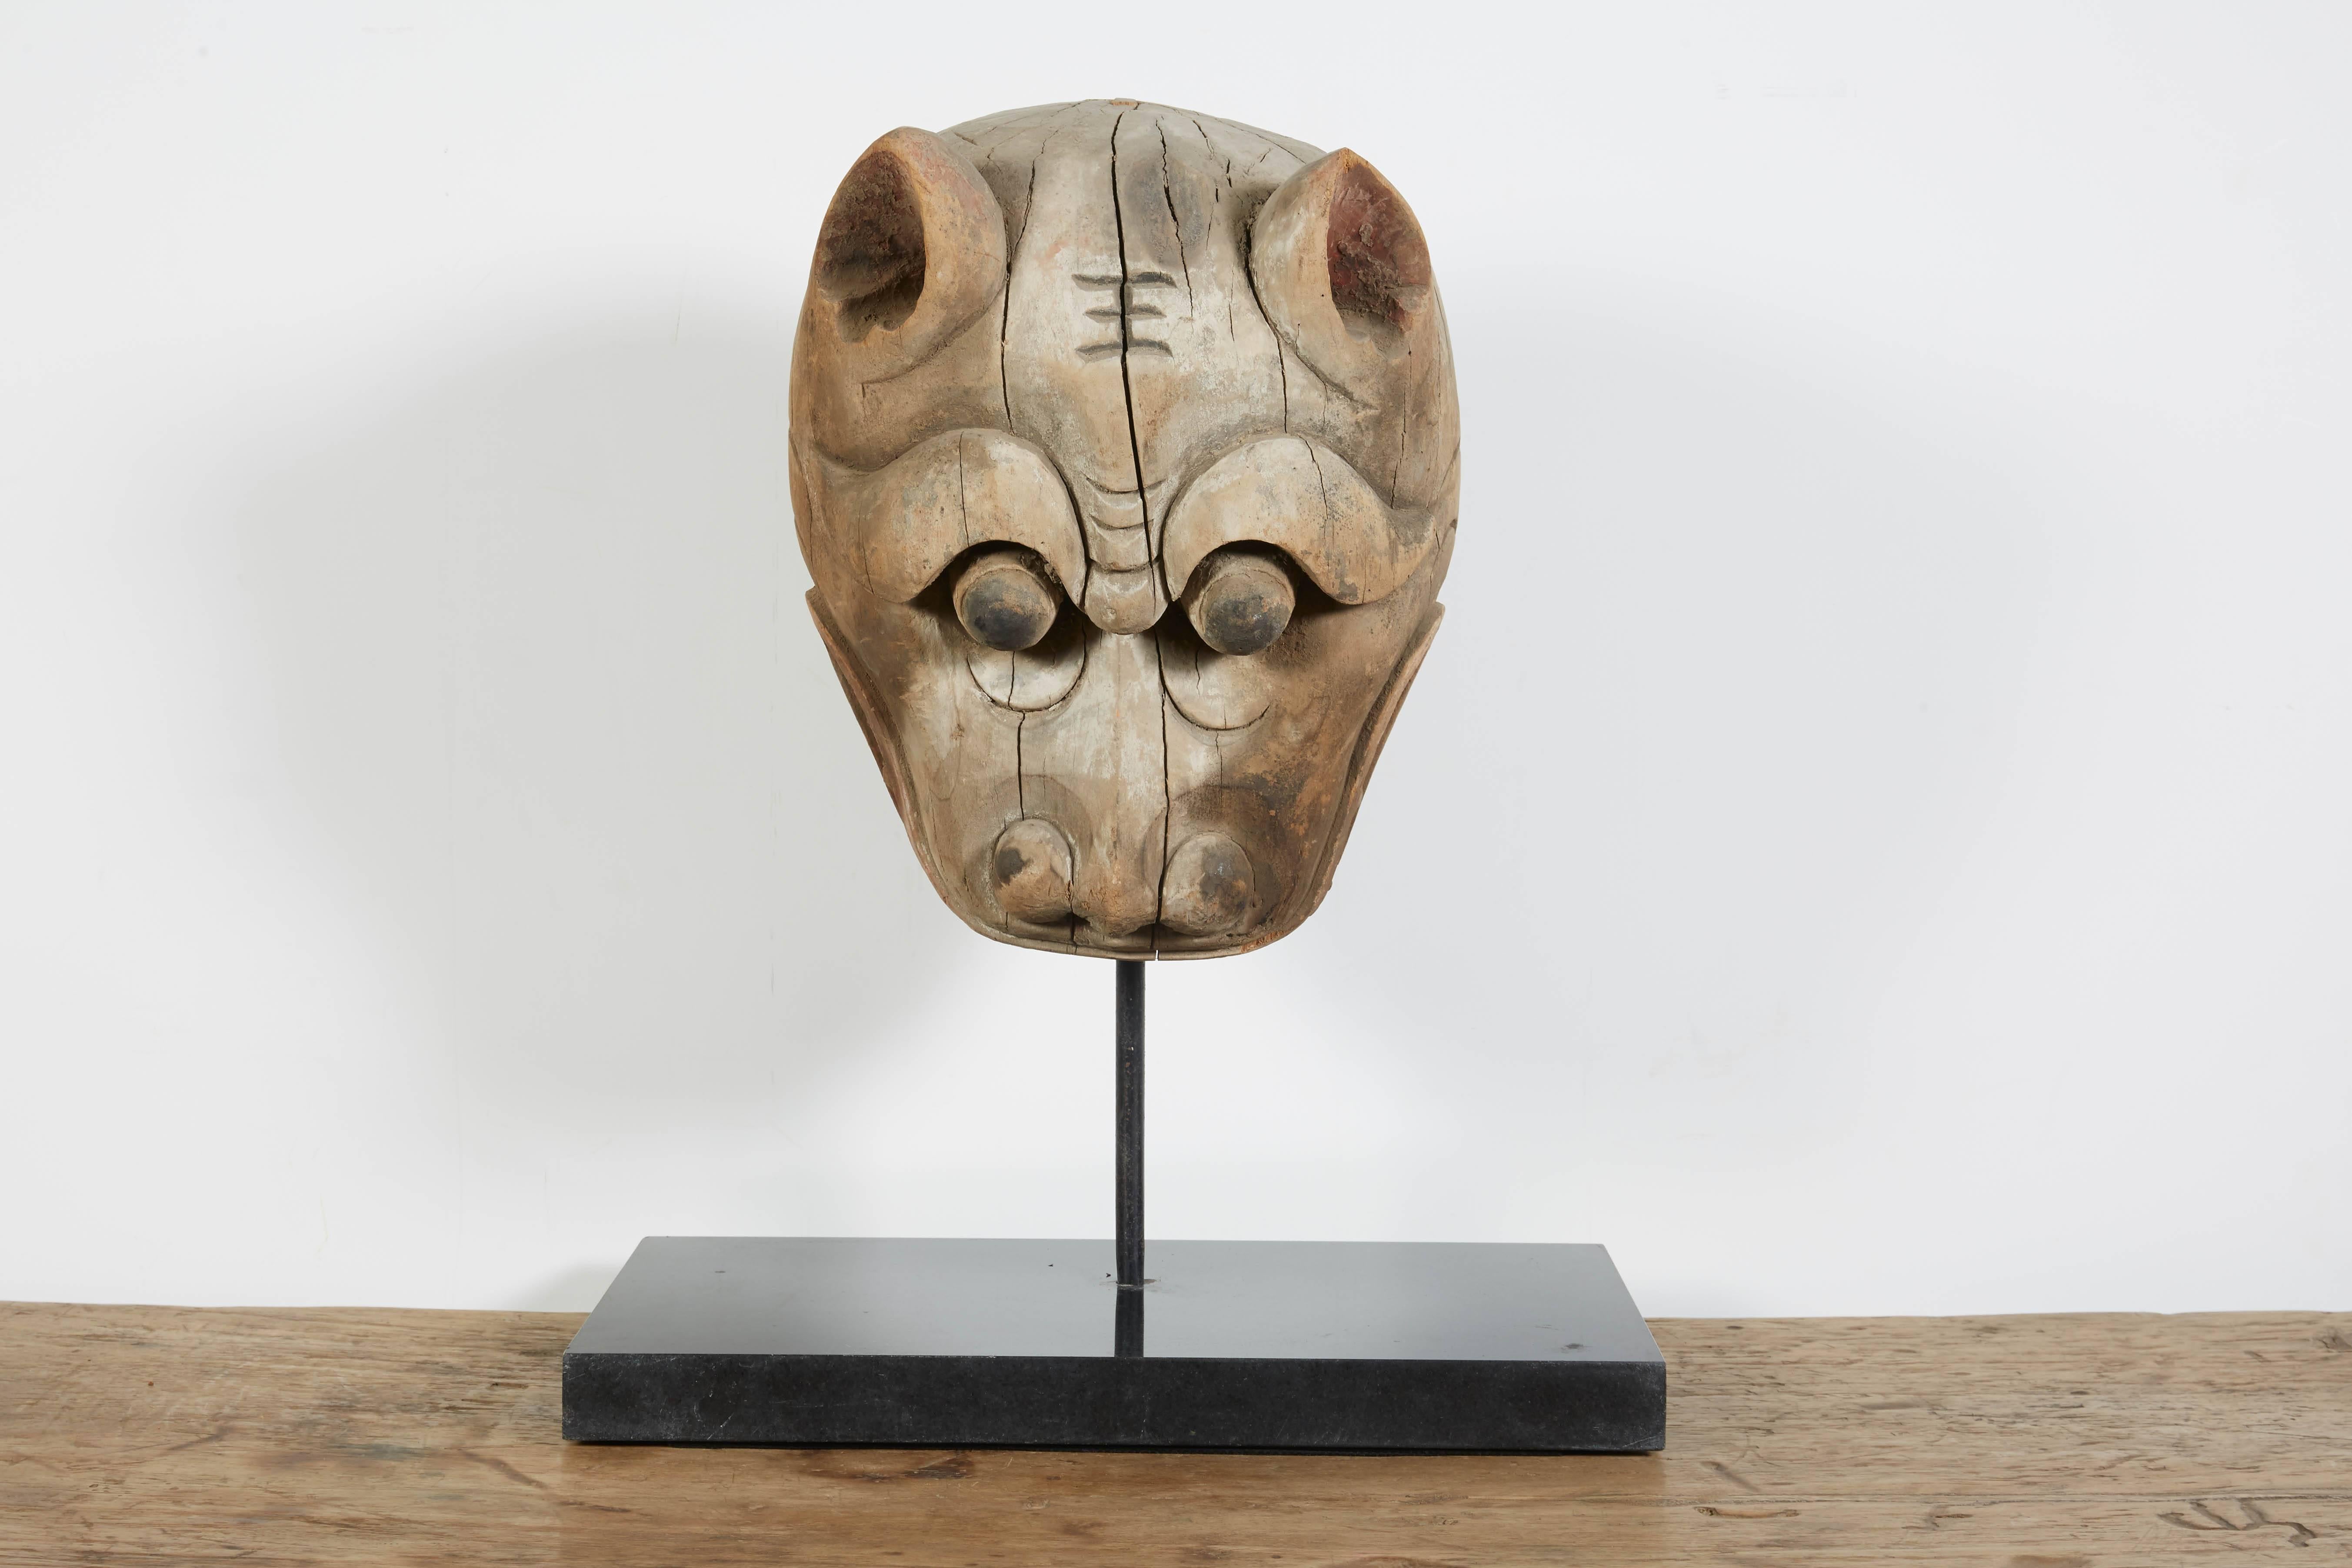 Eine wunderschön geschnitzte Tigermaske aus Ulmenholz aus dem frühen 19. Jahrhundert aus der Provinz Shanxi. Komplett mit maßgefertigtem Ständer aus schwarzem Stein.
Maße: Maske: L 10, T 7, H 16
Auf dem Stand: L 16, D 9, H 21
M360.